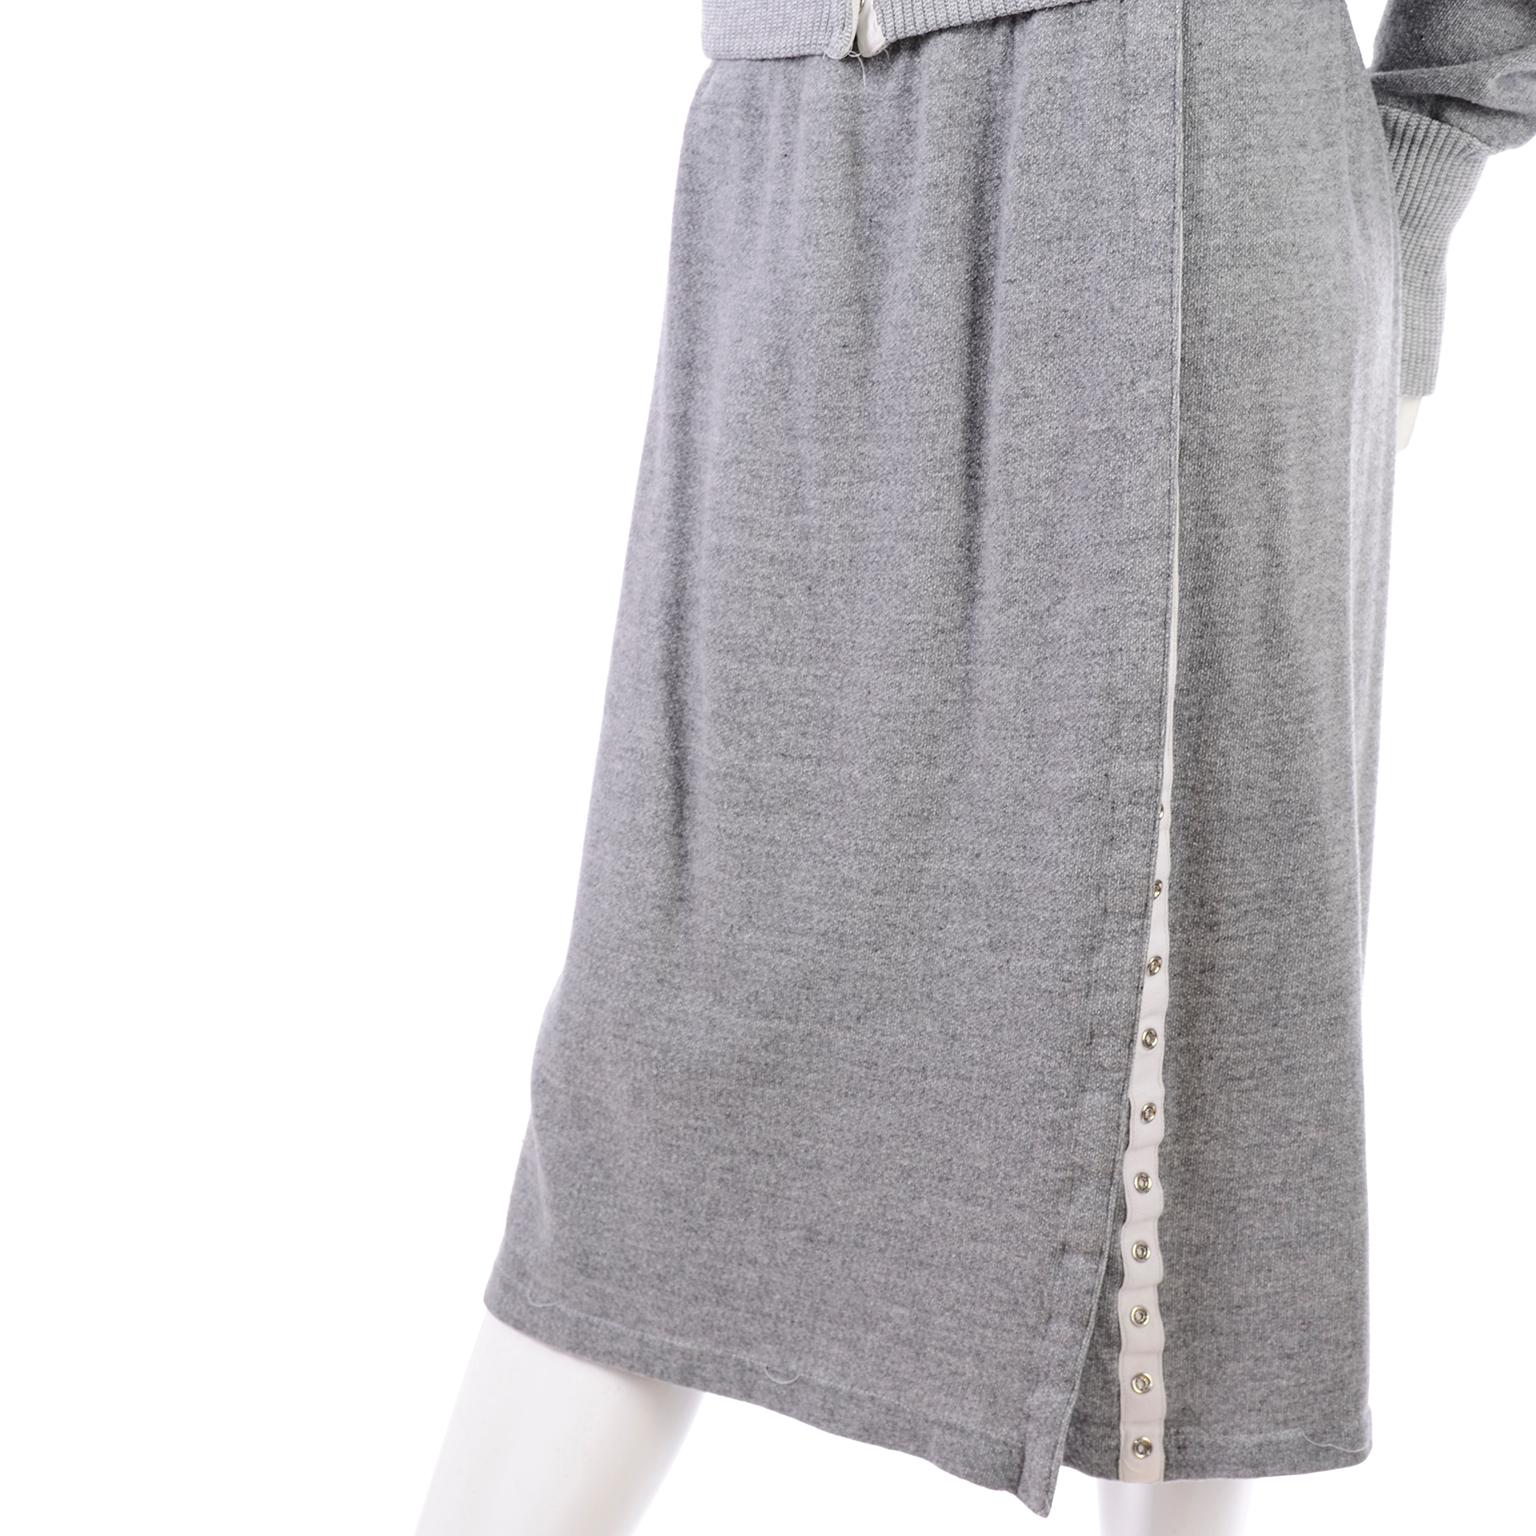 1980s Norma Kamali OMO Gray Fleece Sweatshirt 2 pc Dress w Skirt & Top 2